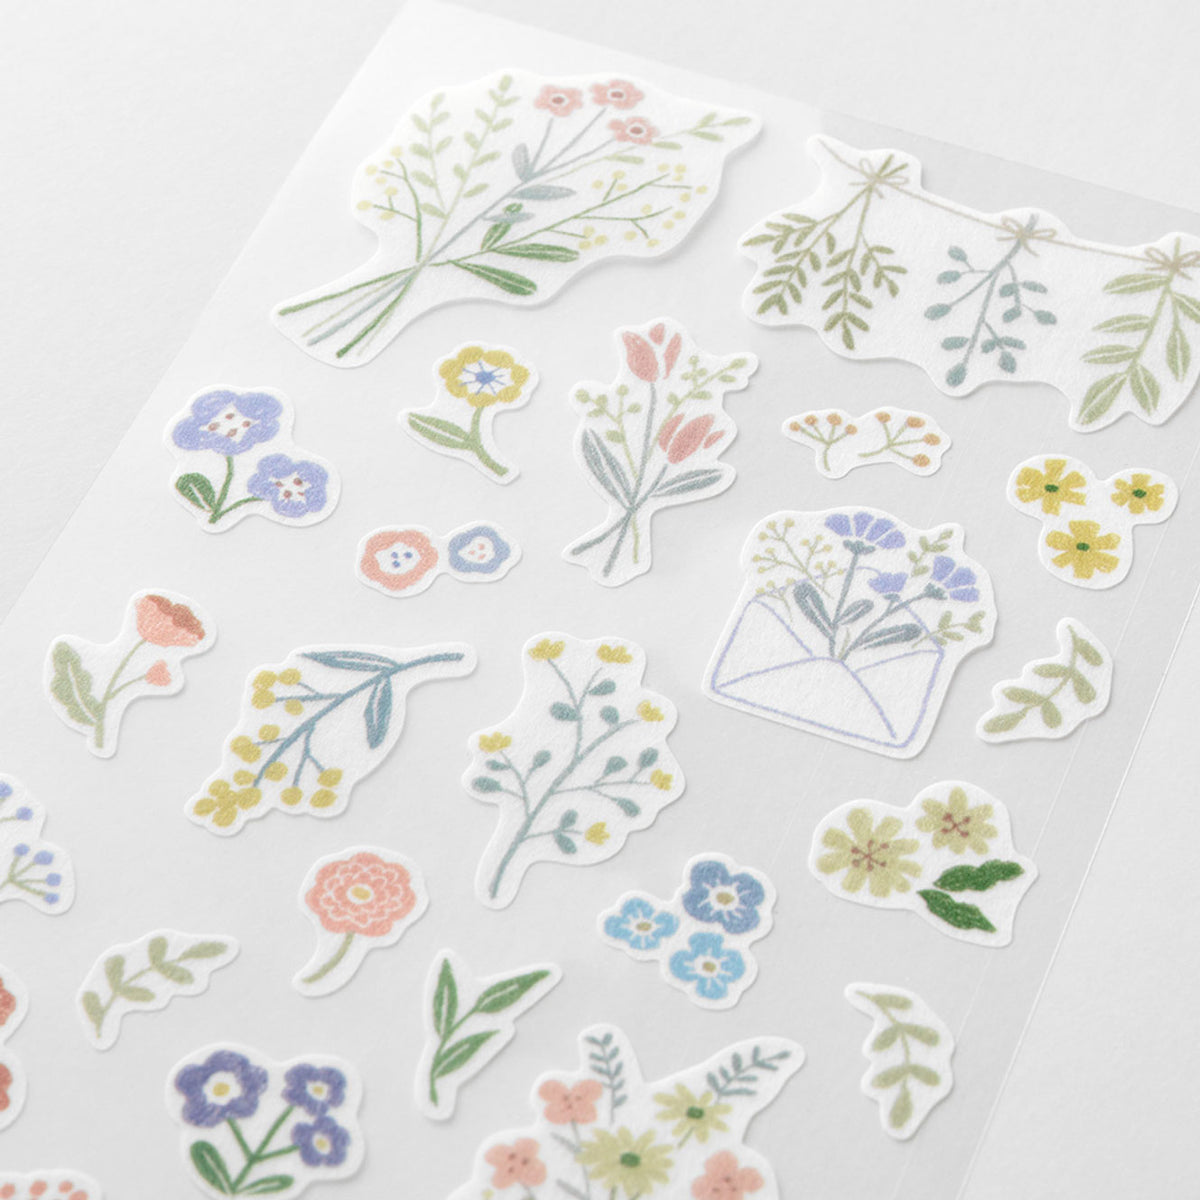 Midori - Planner Sticker - Sticker Collection - Floral